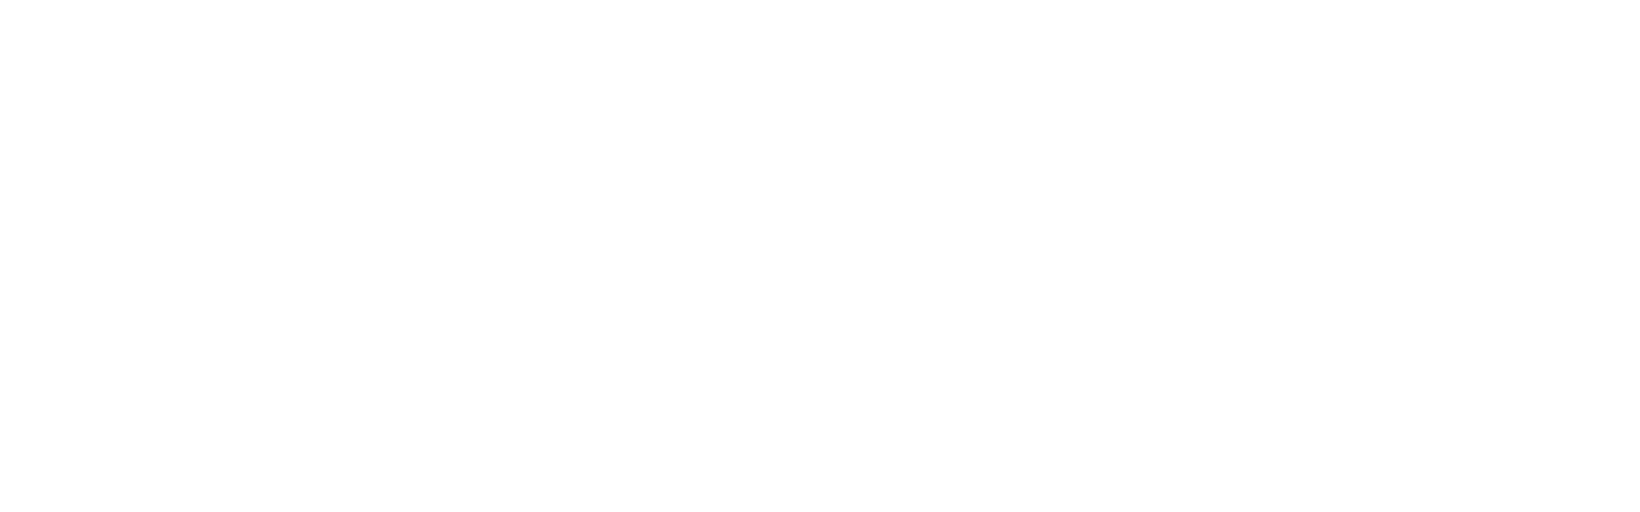 Bolsa24